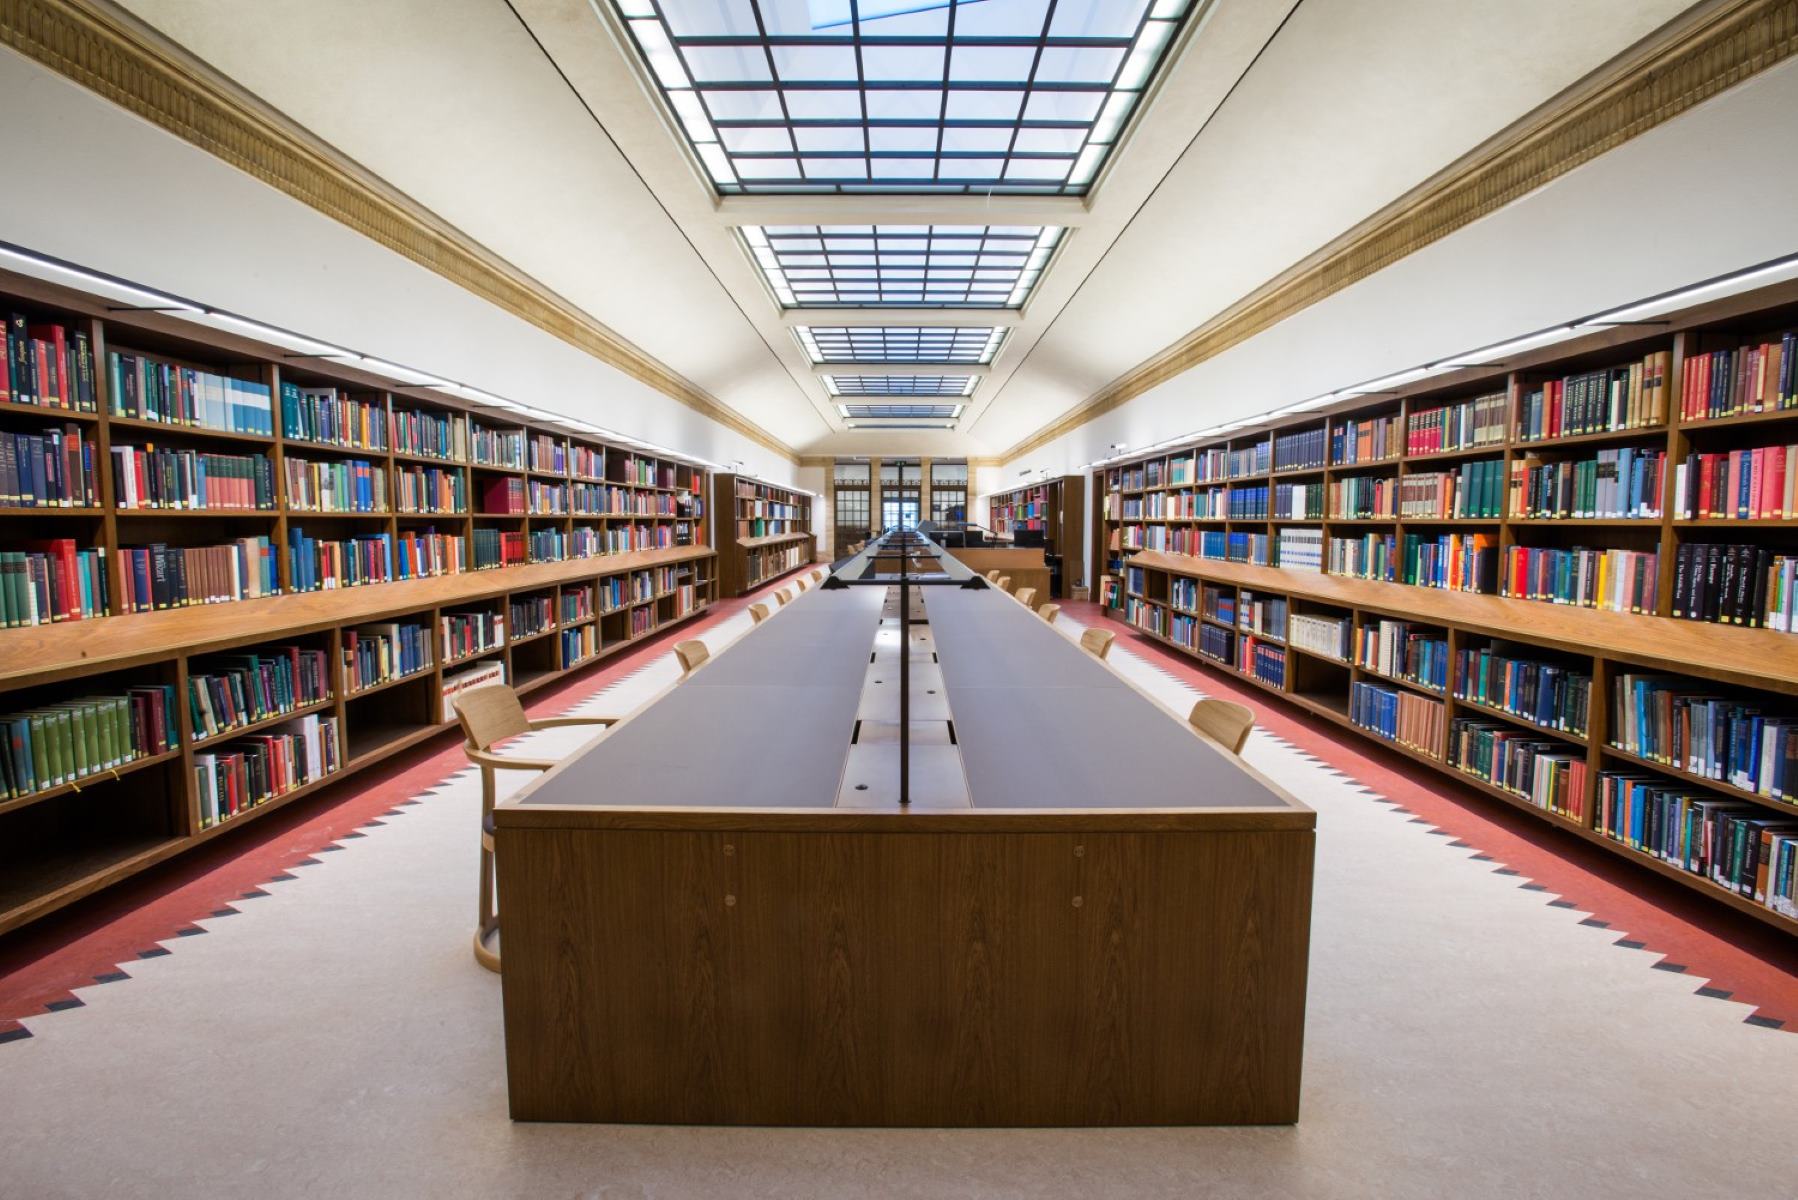 G library. Оксфордский университет библиотека. Йельский университет библиотека. Красивая библиотека. Красивые читальные залы.